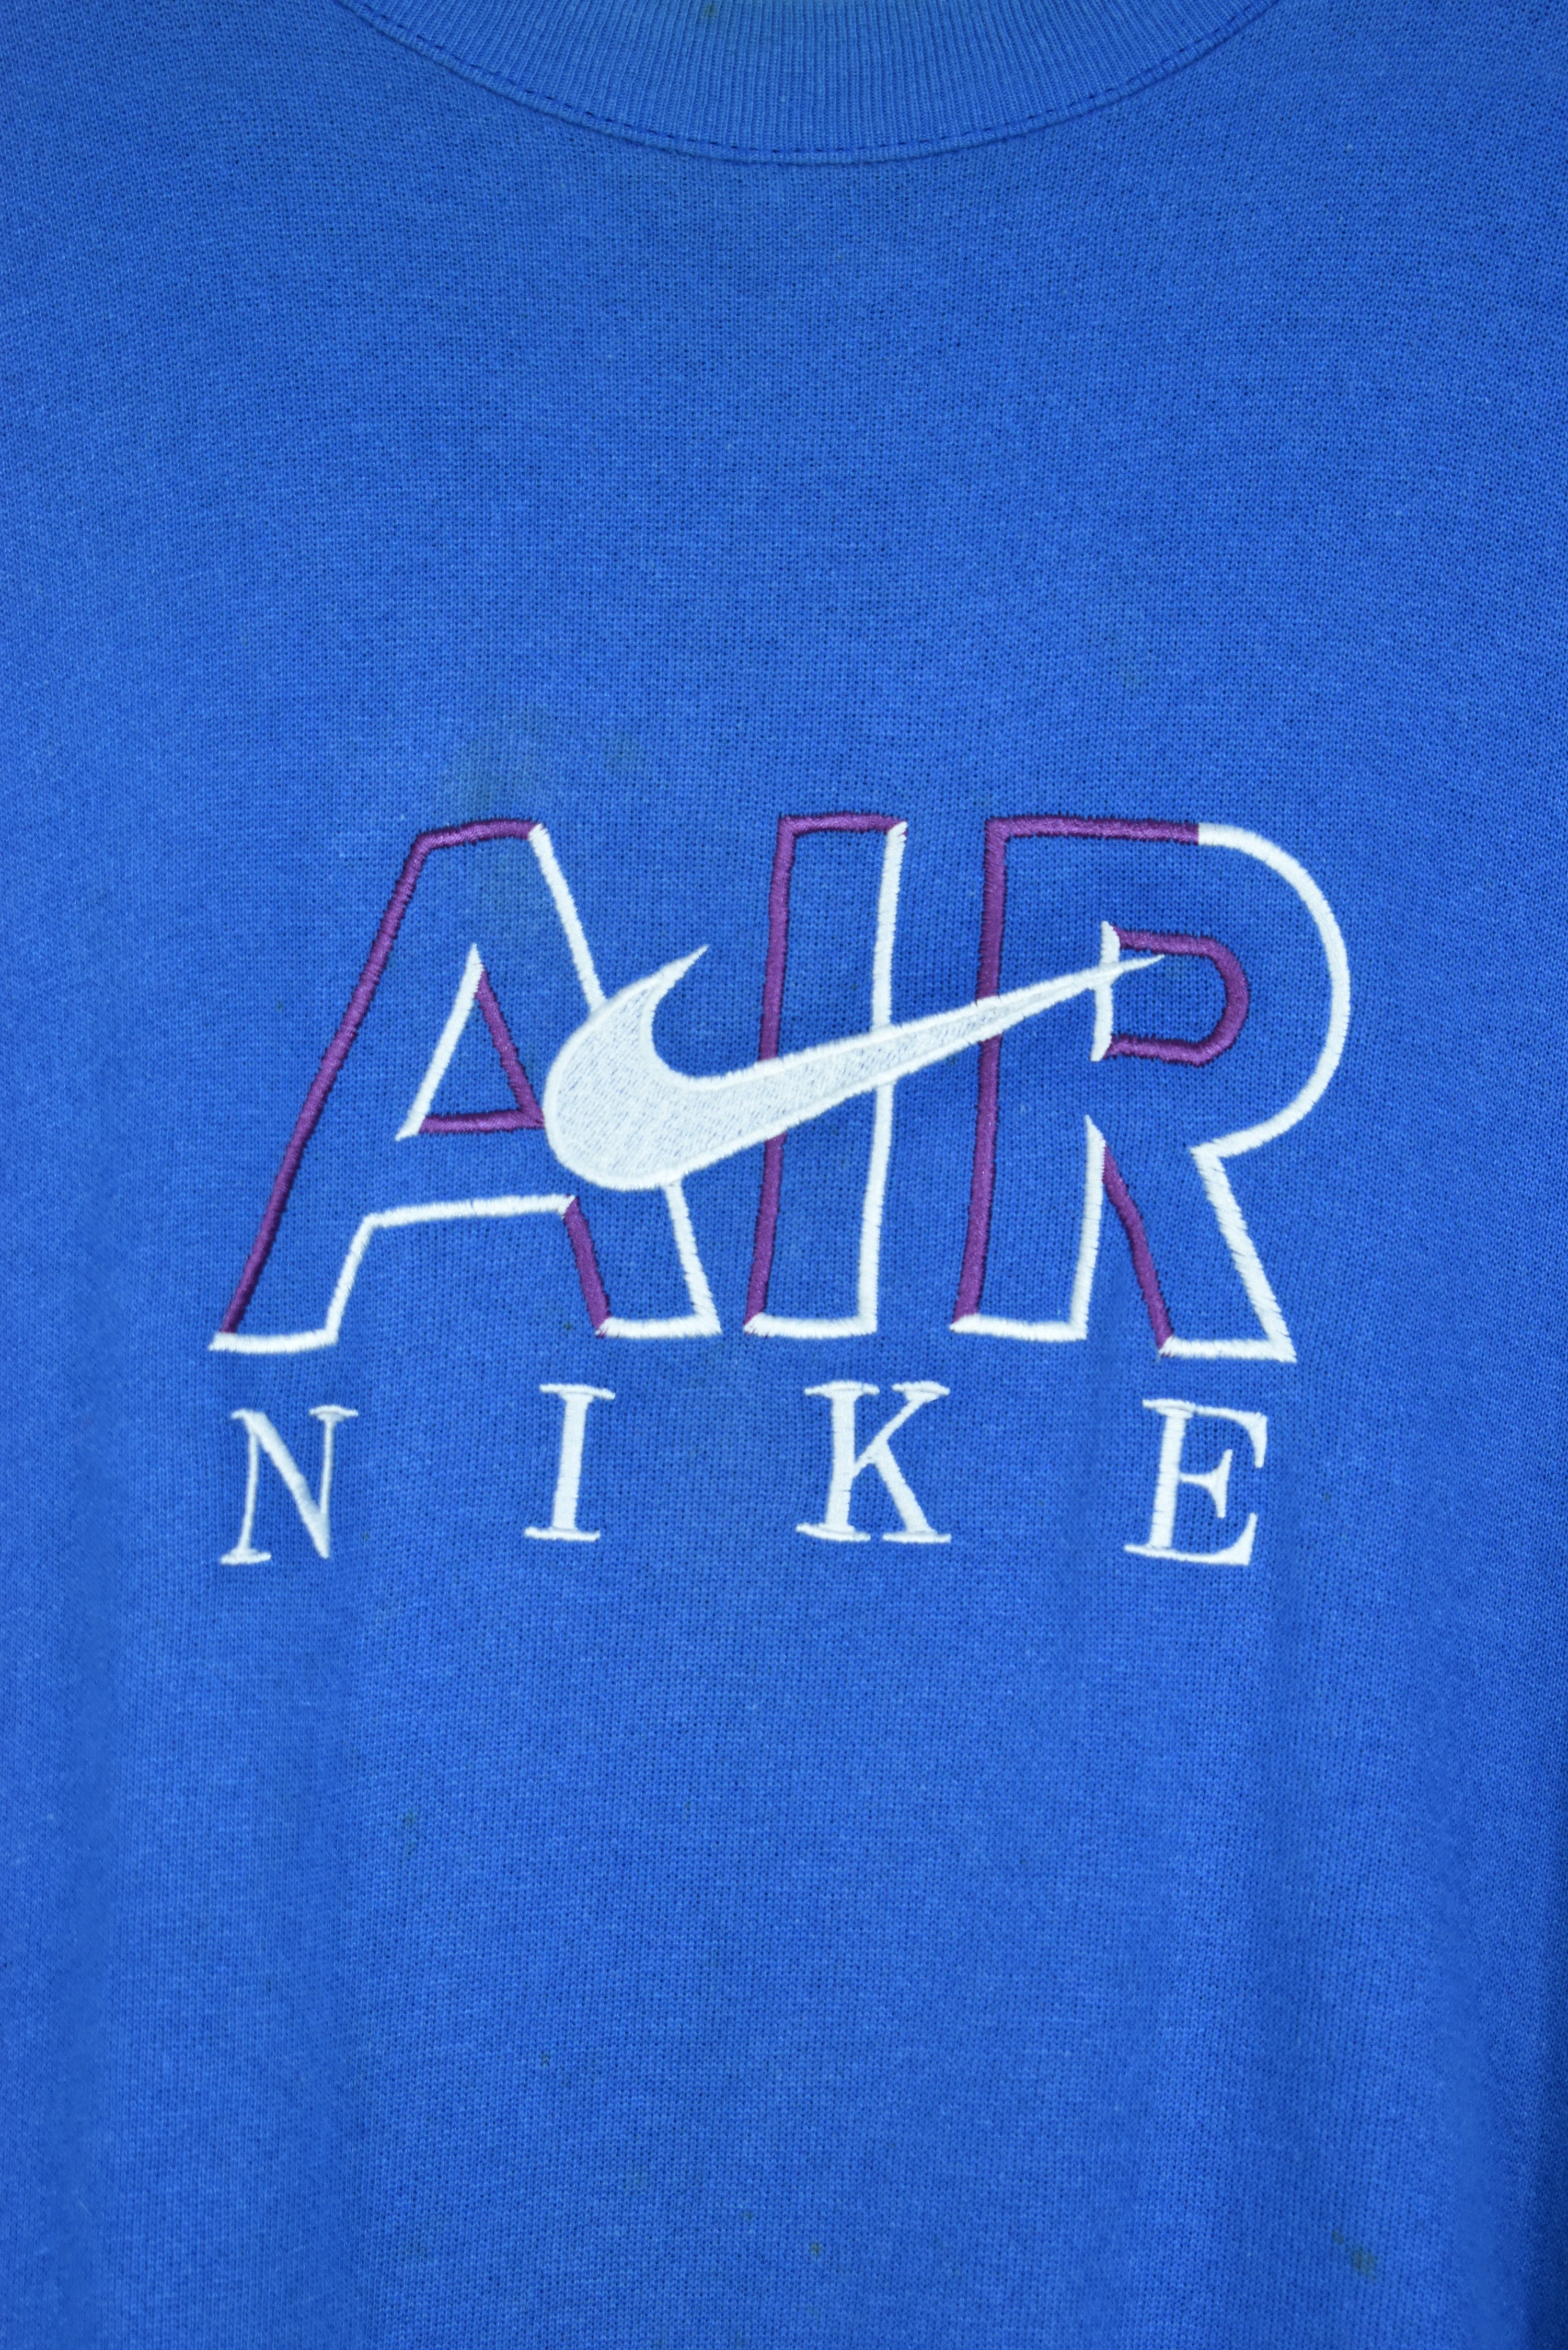 Vintage Nike Air Blue Embroidery Bootleg Sweatshirt Xlarge